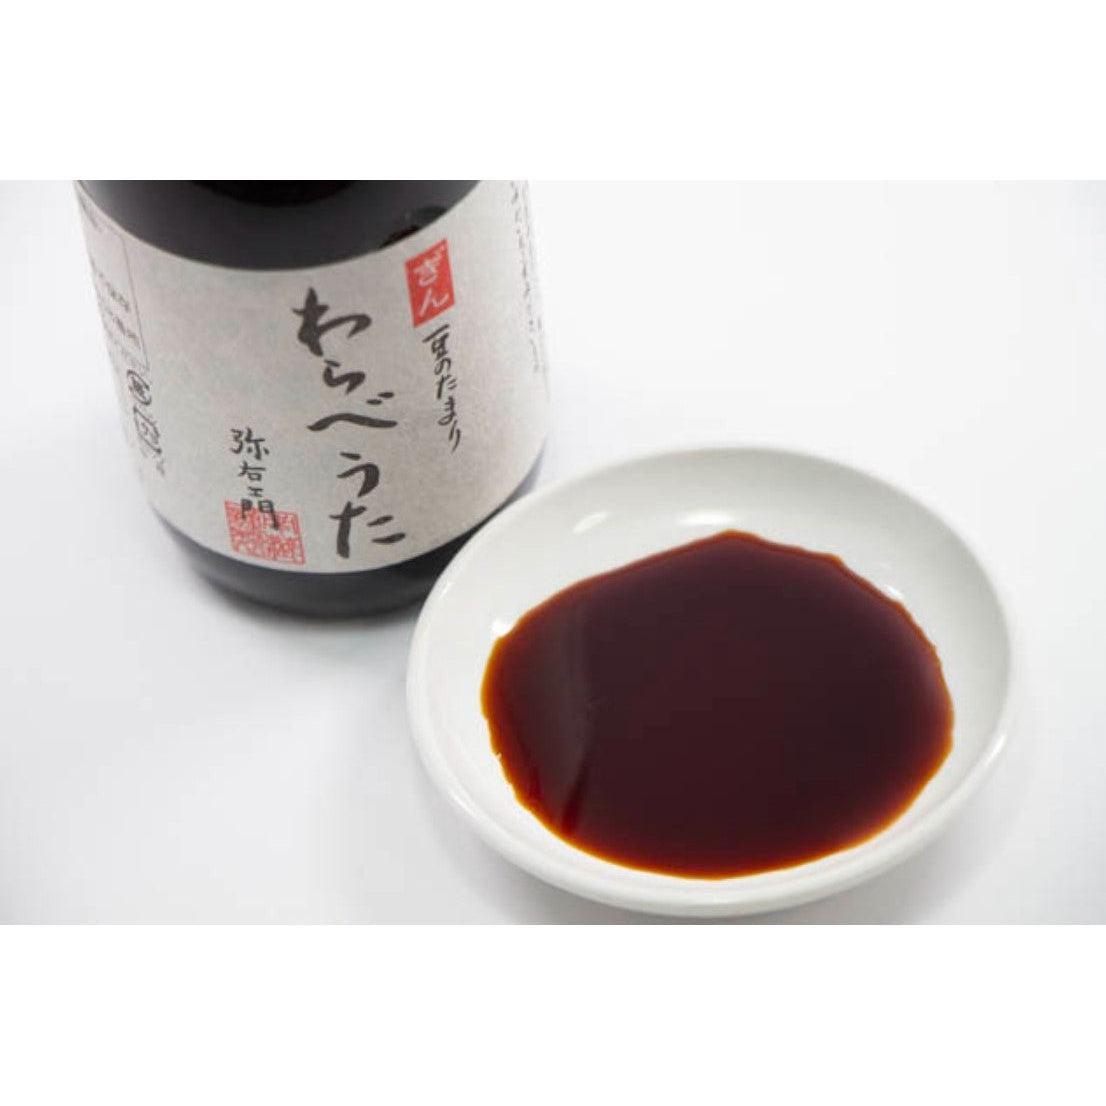 Minamigura Rich Tamari Shoyu Gin Warabeuta (3-Year Barrel Aged Gluten-Free Soy Sauce) 200ml